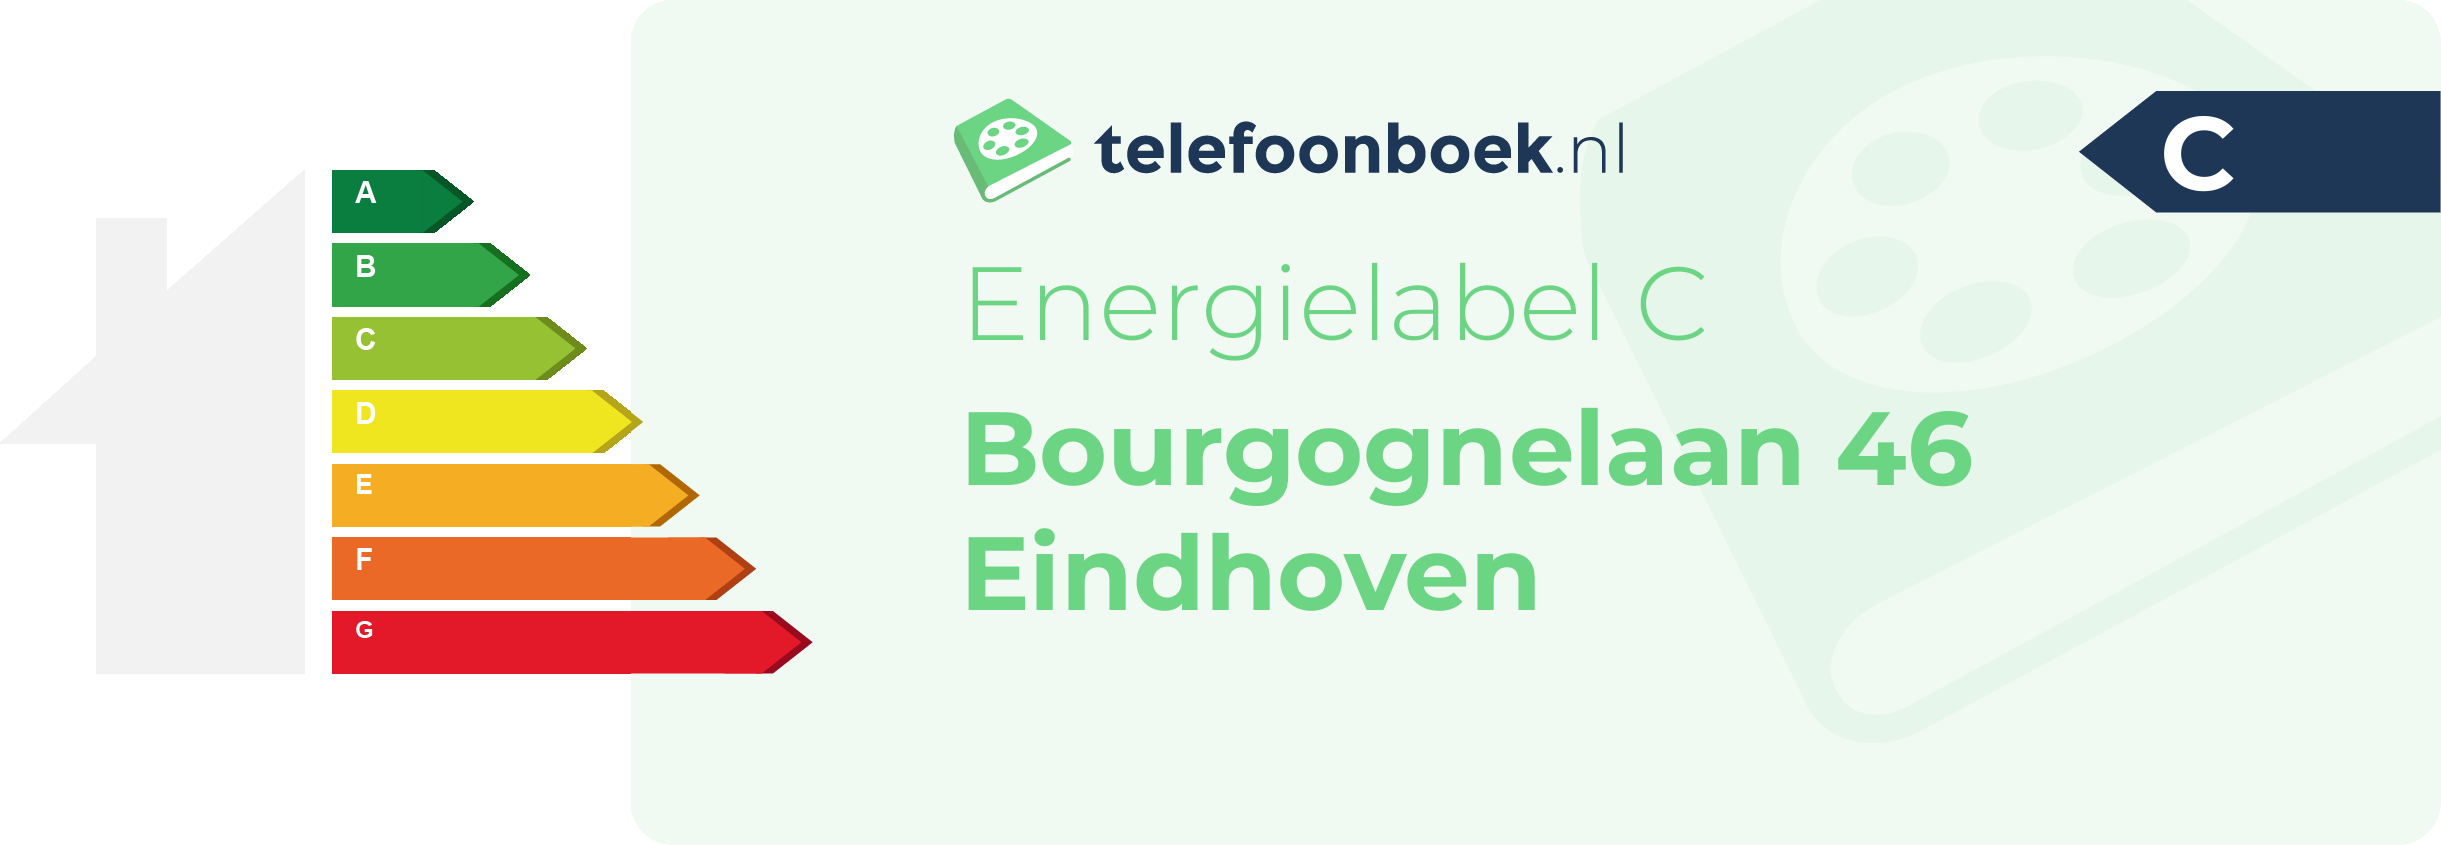 Energielabel Bourgognelaan 46 Eindhoven